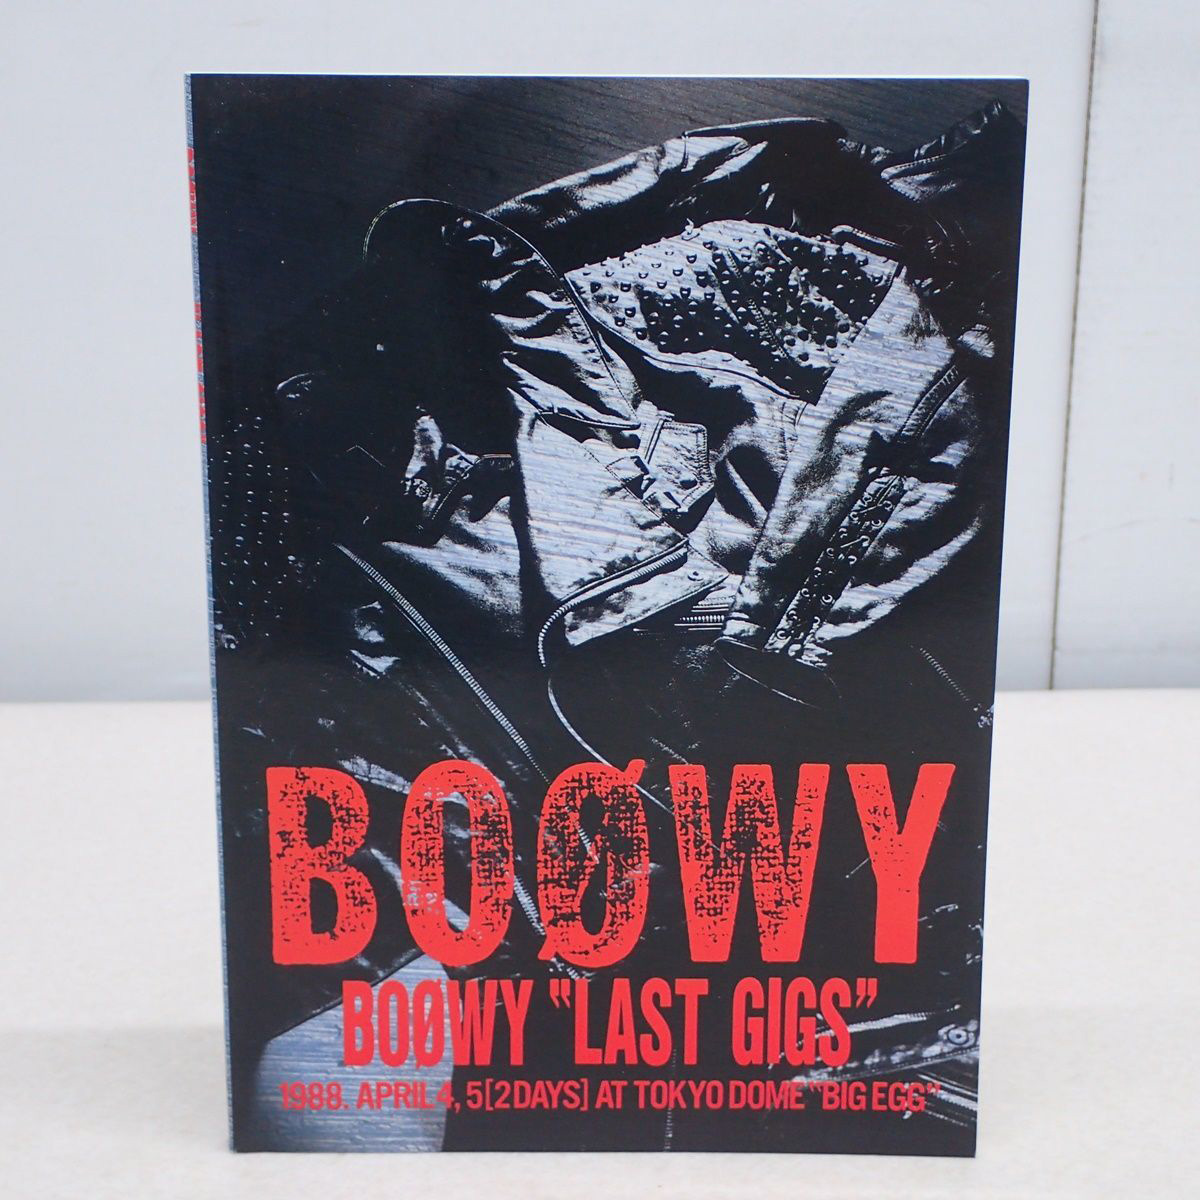 バンドスコア BOOWY 「LAST GIGS」 タブ譜付 楽譜 2012年発行